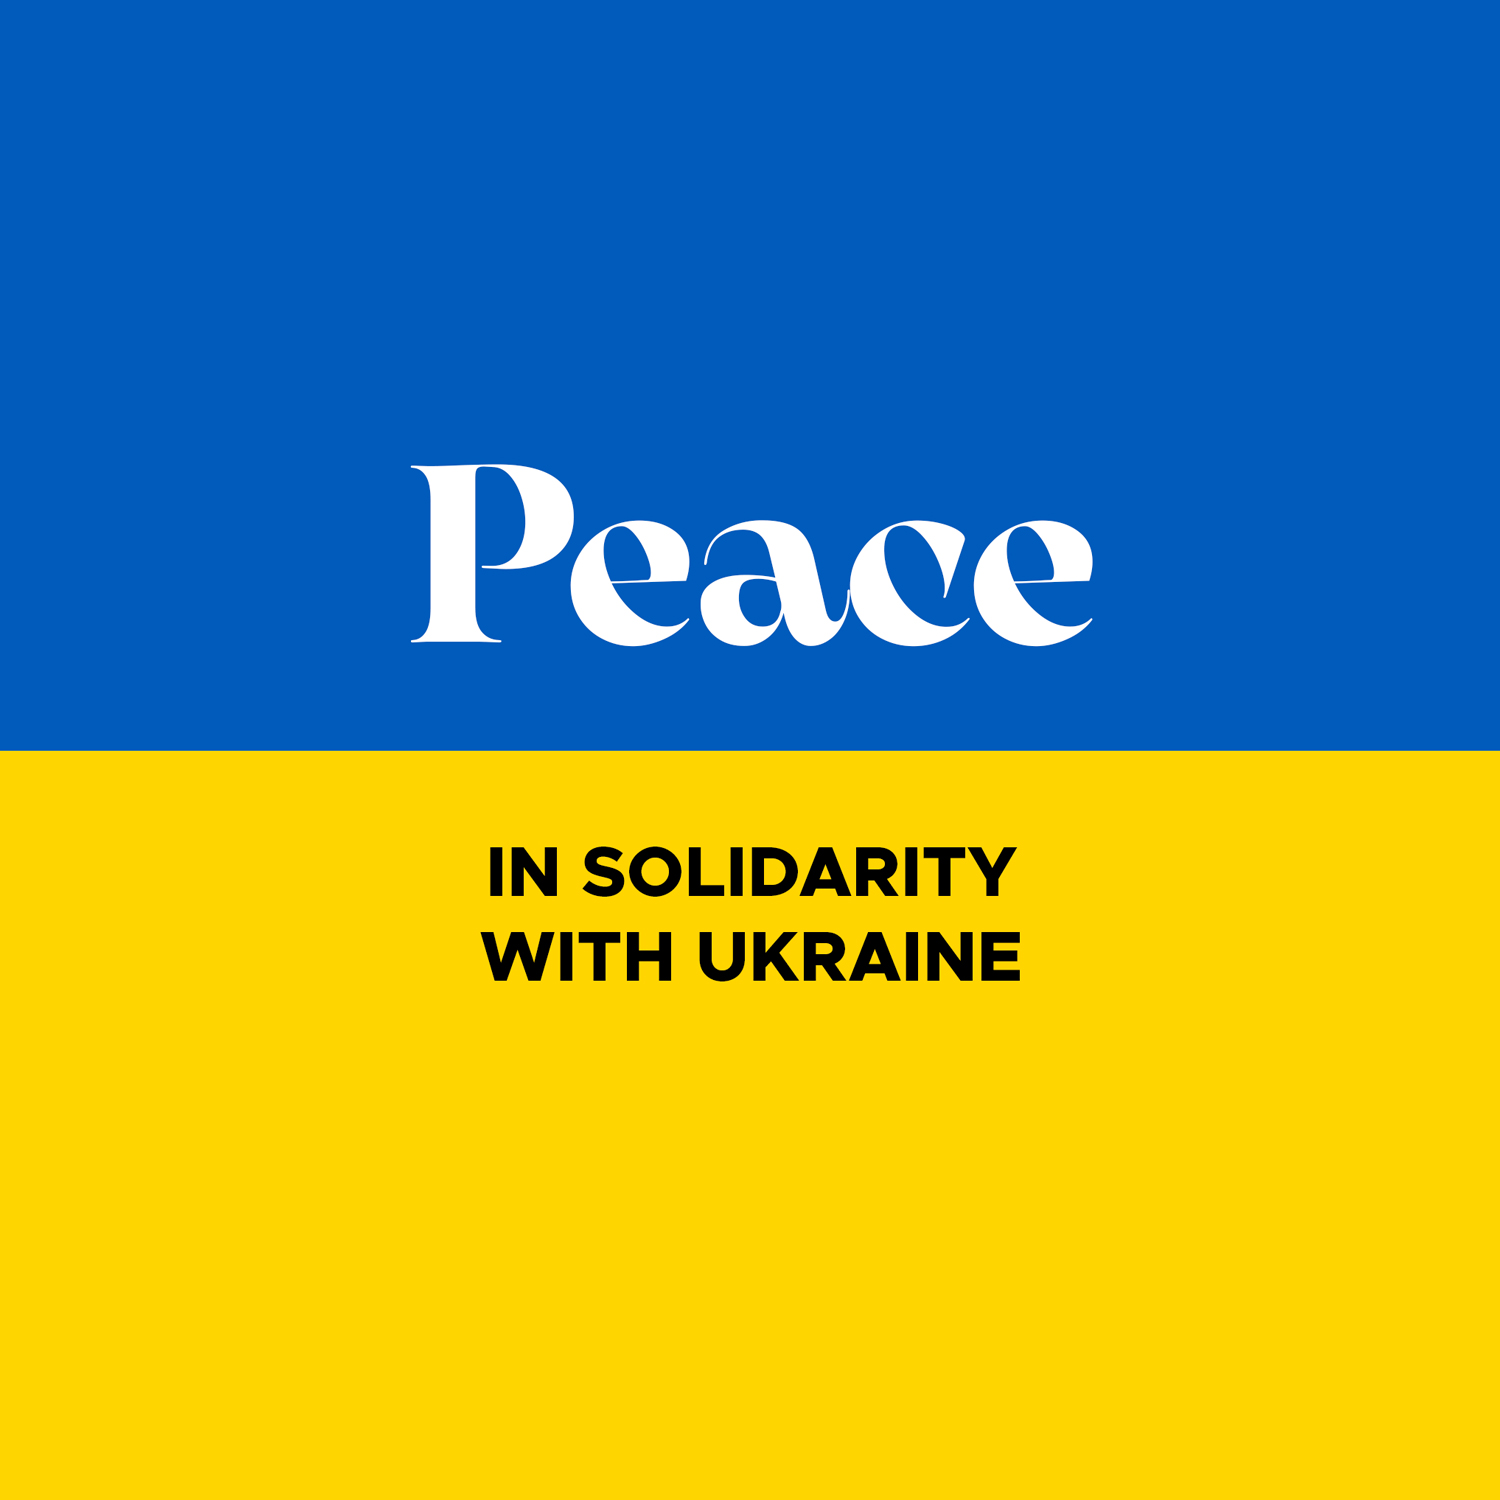 PEACE FOR UKRAINE!